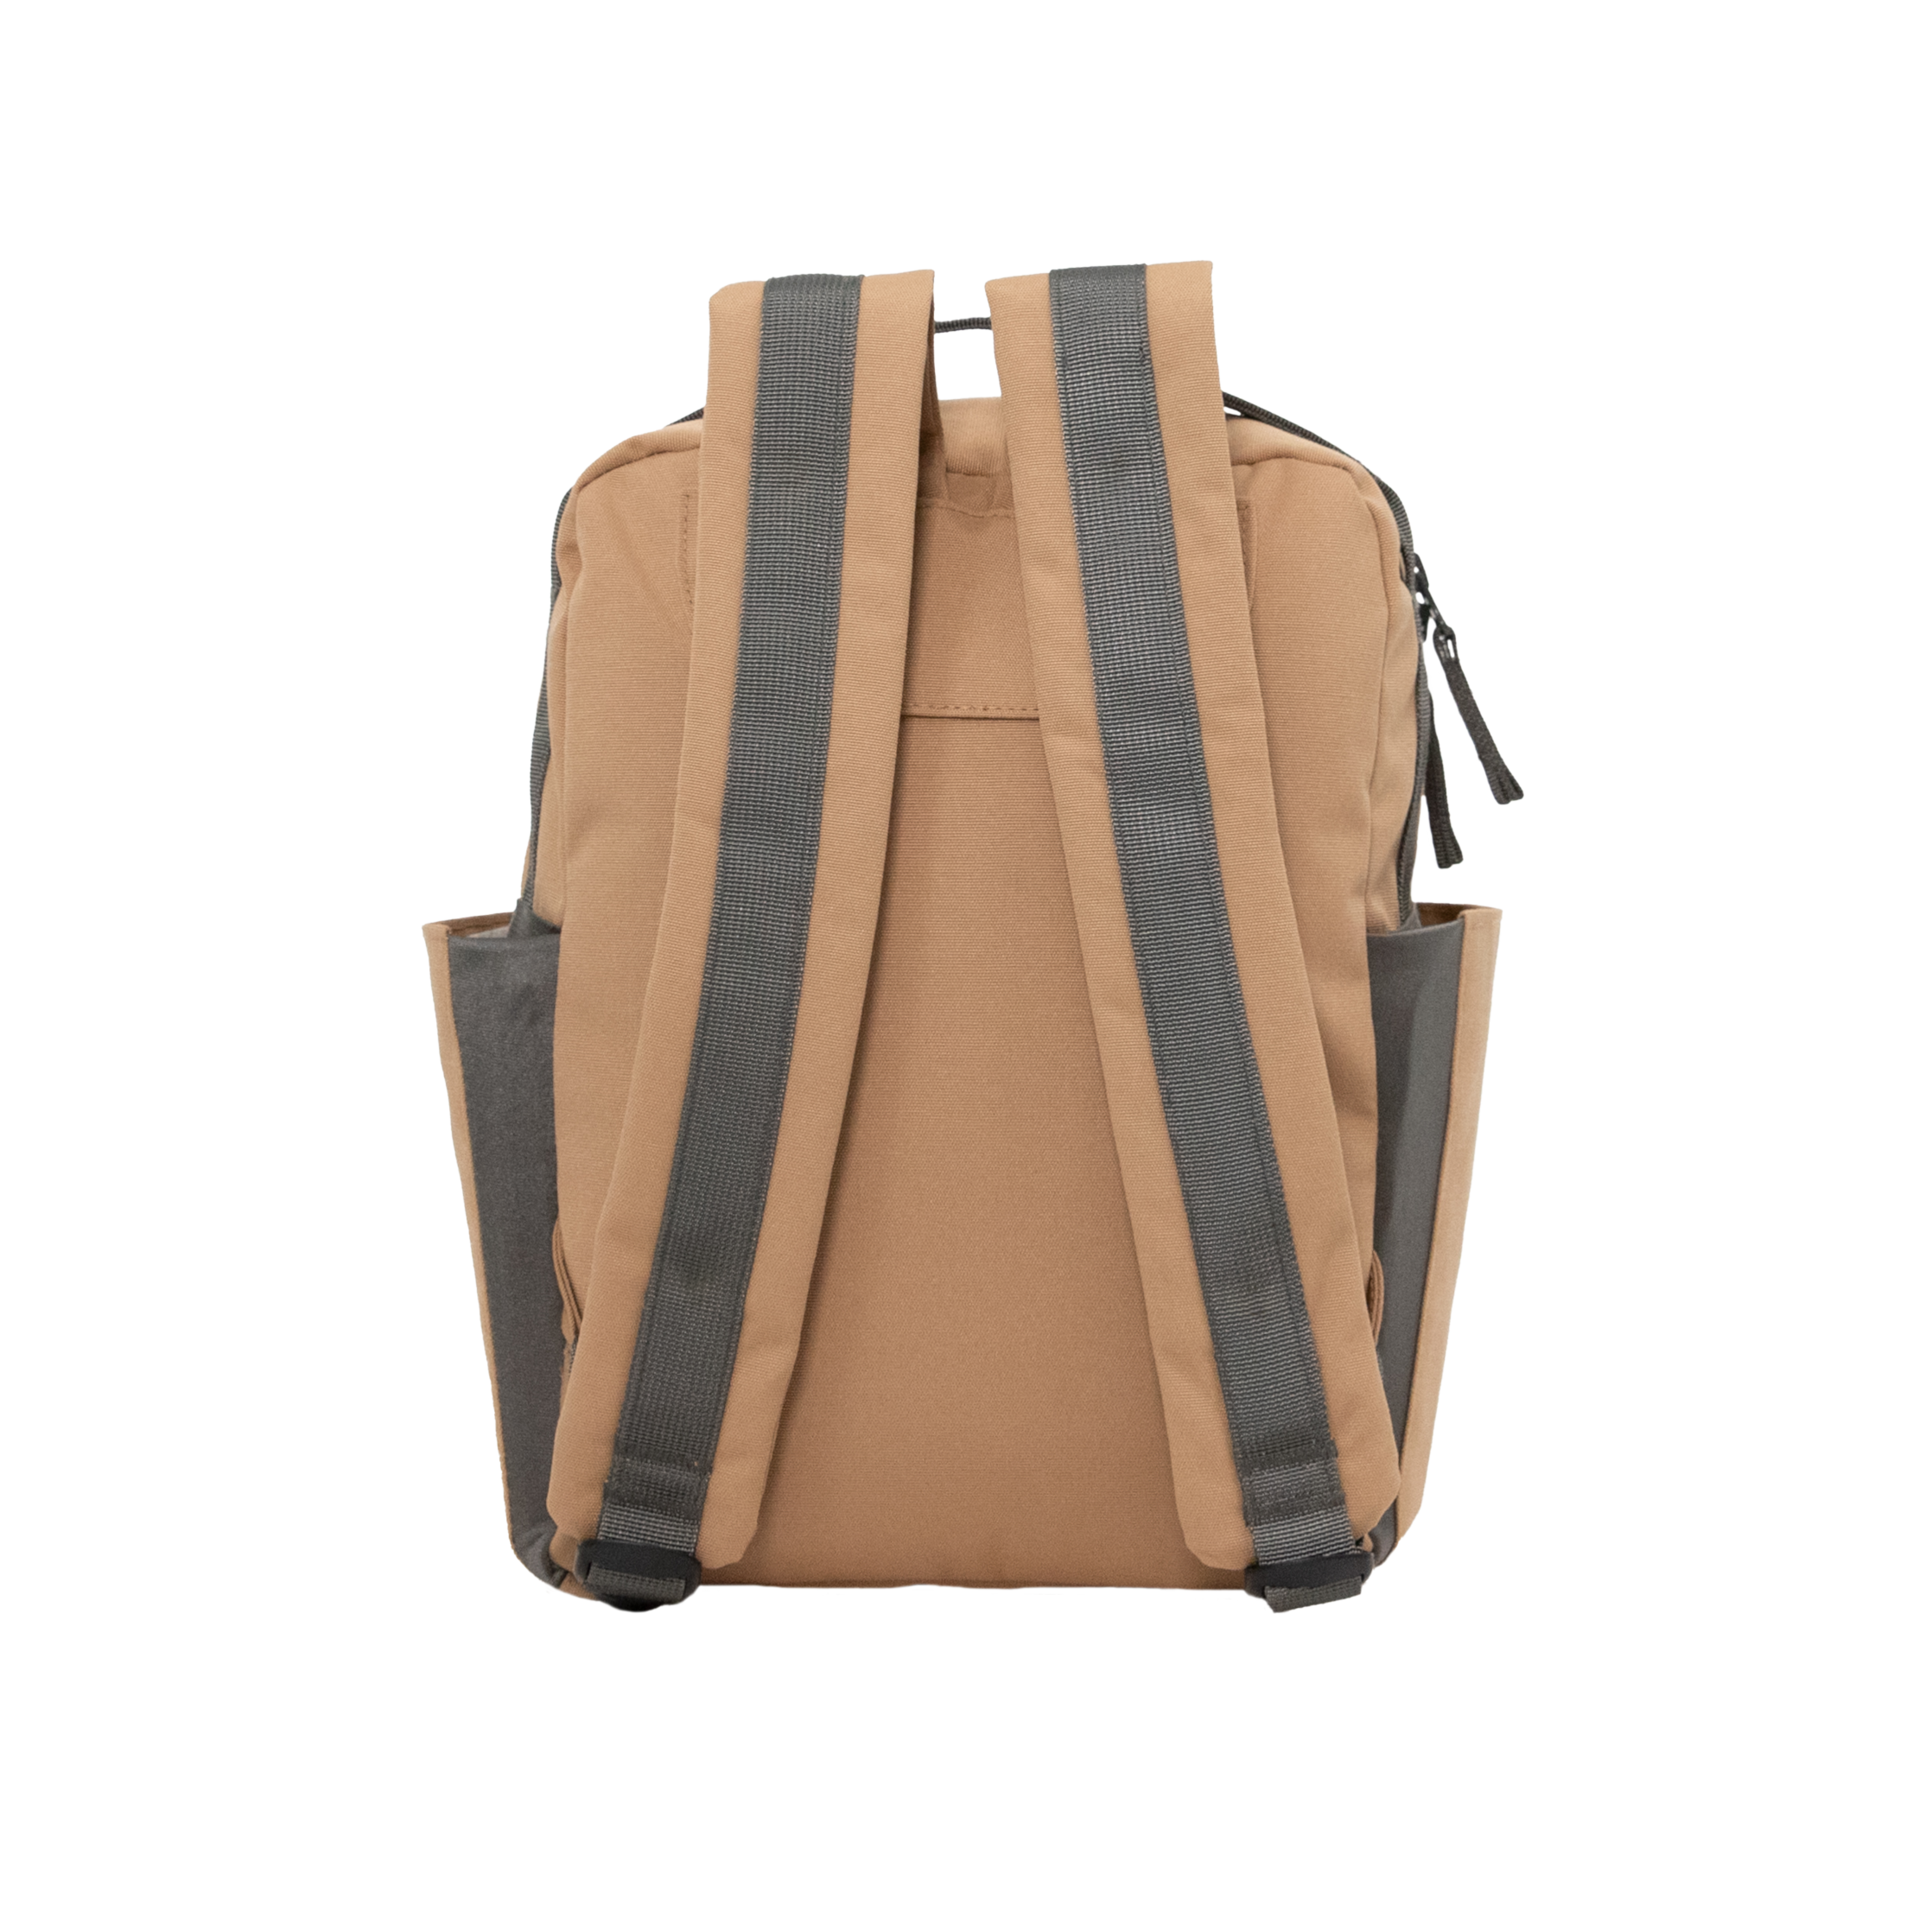 Mini Roo Backpack - Toffee